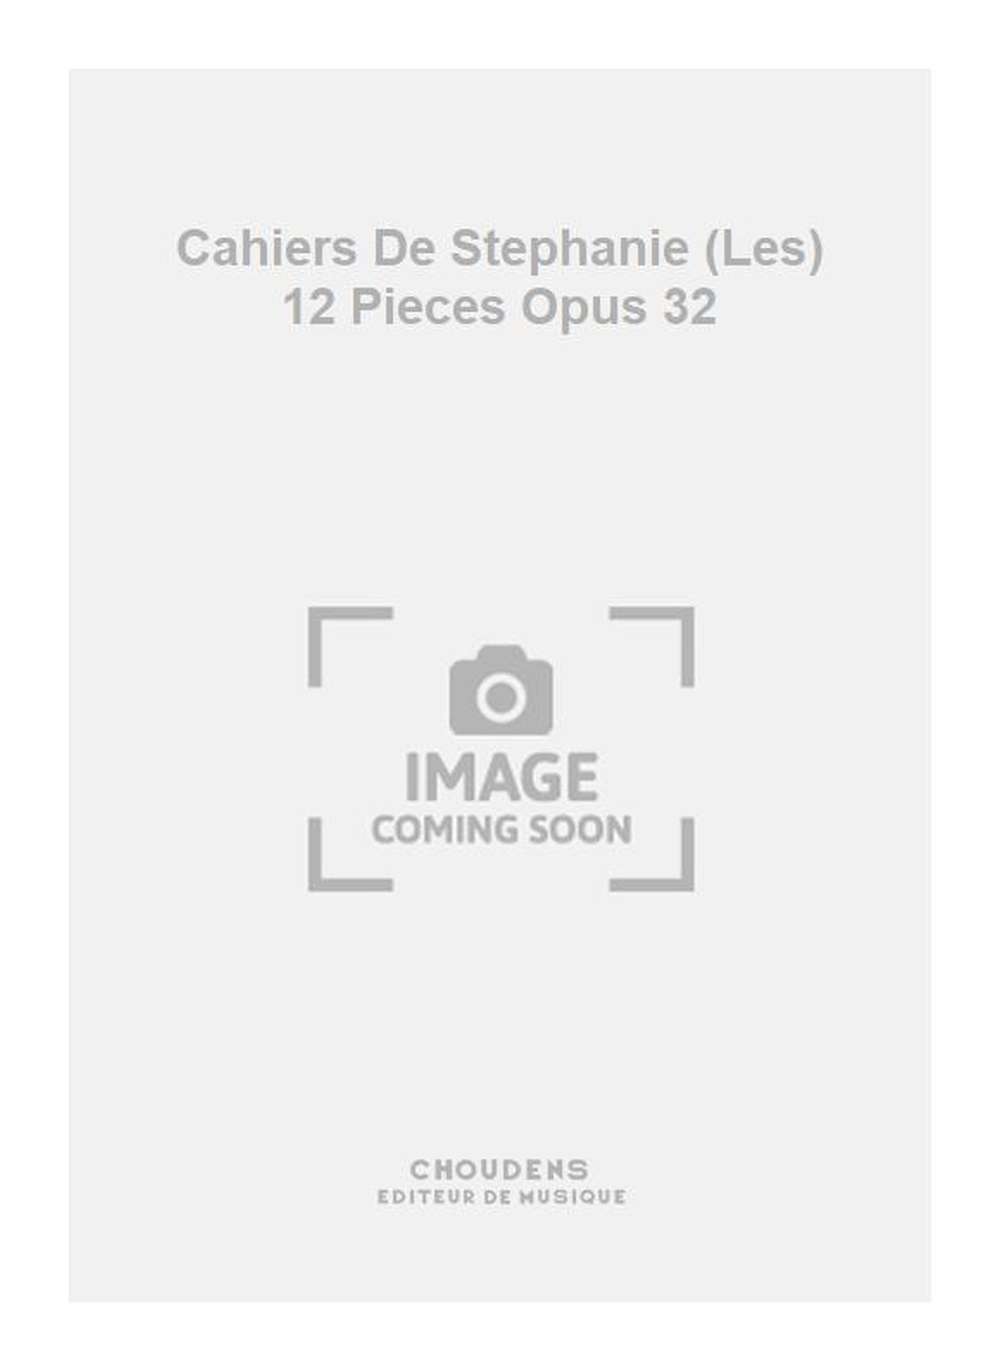 Guibert: Cahiers De Stephanie (Les) 12 Pieces Opus 32